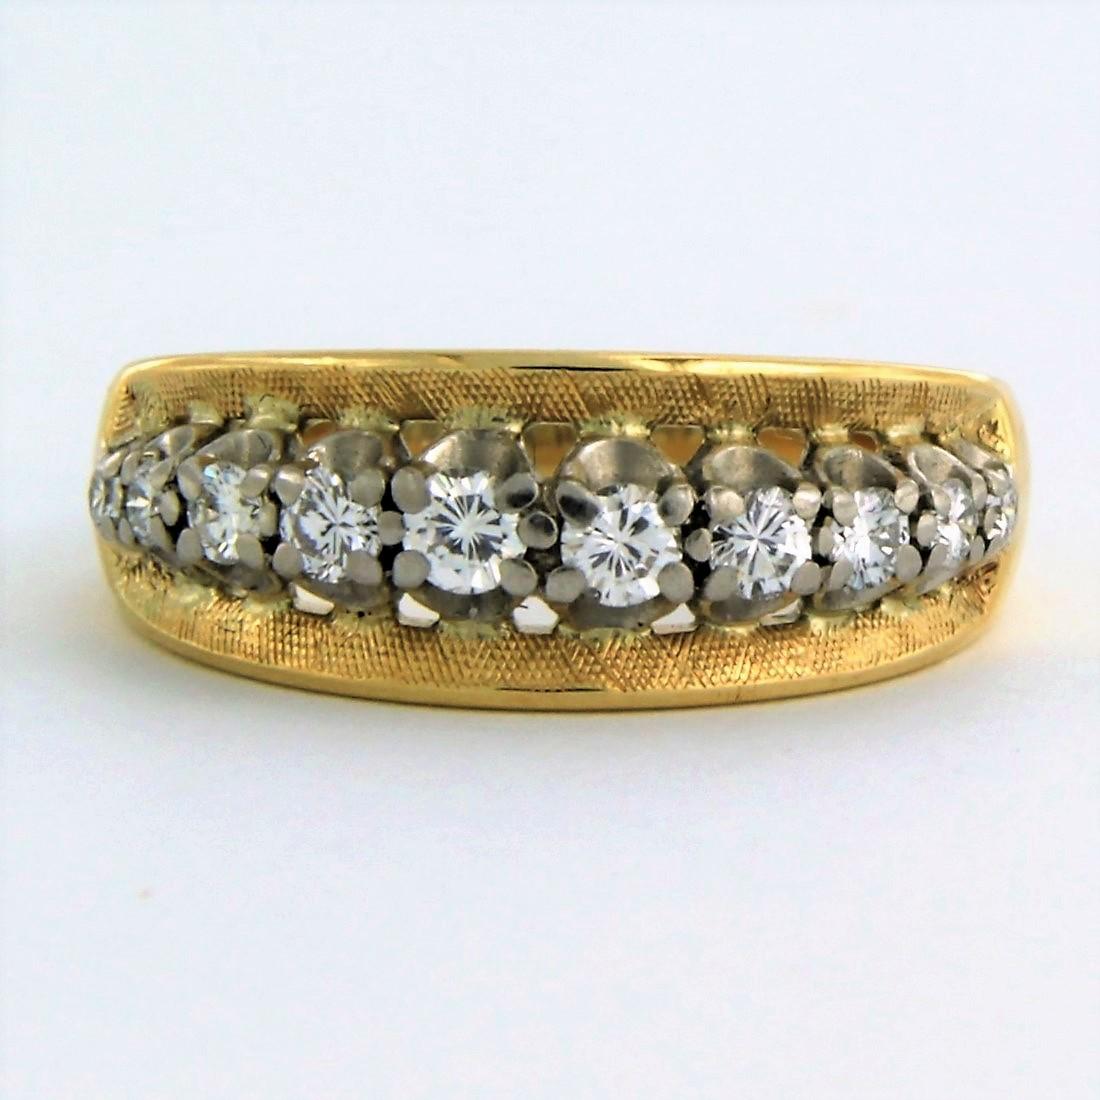 Ring aus 18k Bicolor-Gold, besetzt mit Diamanten im Brillantschliff bis zu . 0,30ct - F/G - VS/SI - Ringgröße U.S. 4.75 - EU. 15.5 (49)

detaillierte Beschreibung:

der Ring ist etwa 7.1 mm breit

Ringgröße US 4.75 - EU. 15.5 (49), Ring kann zum